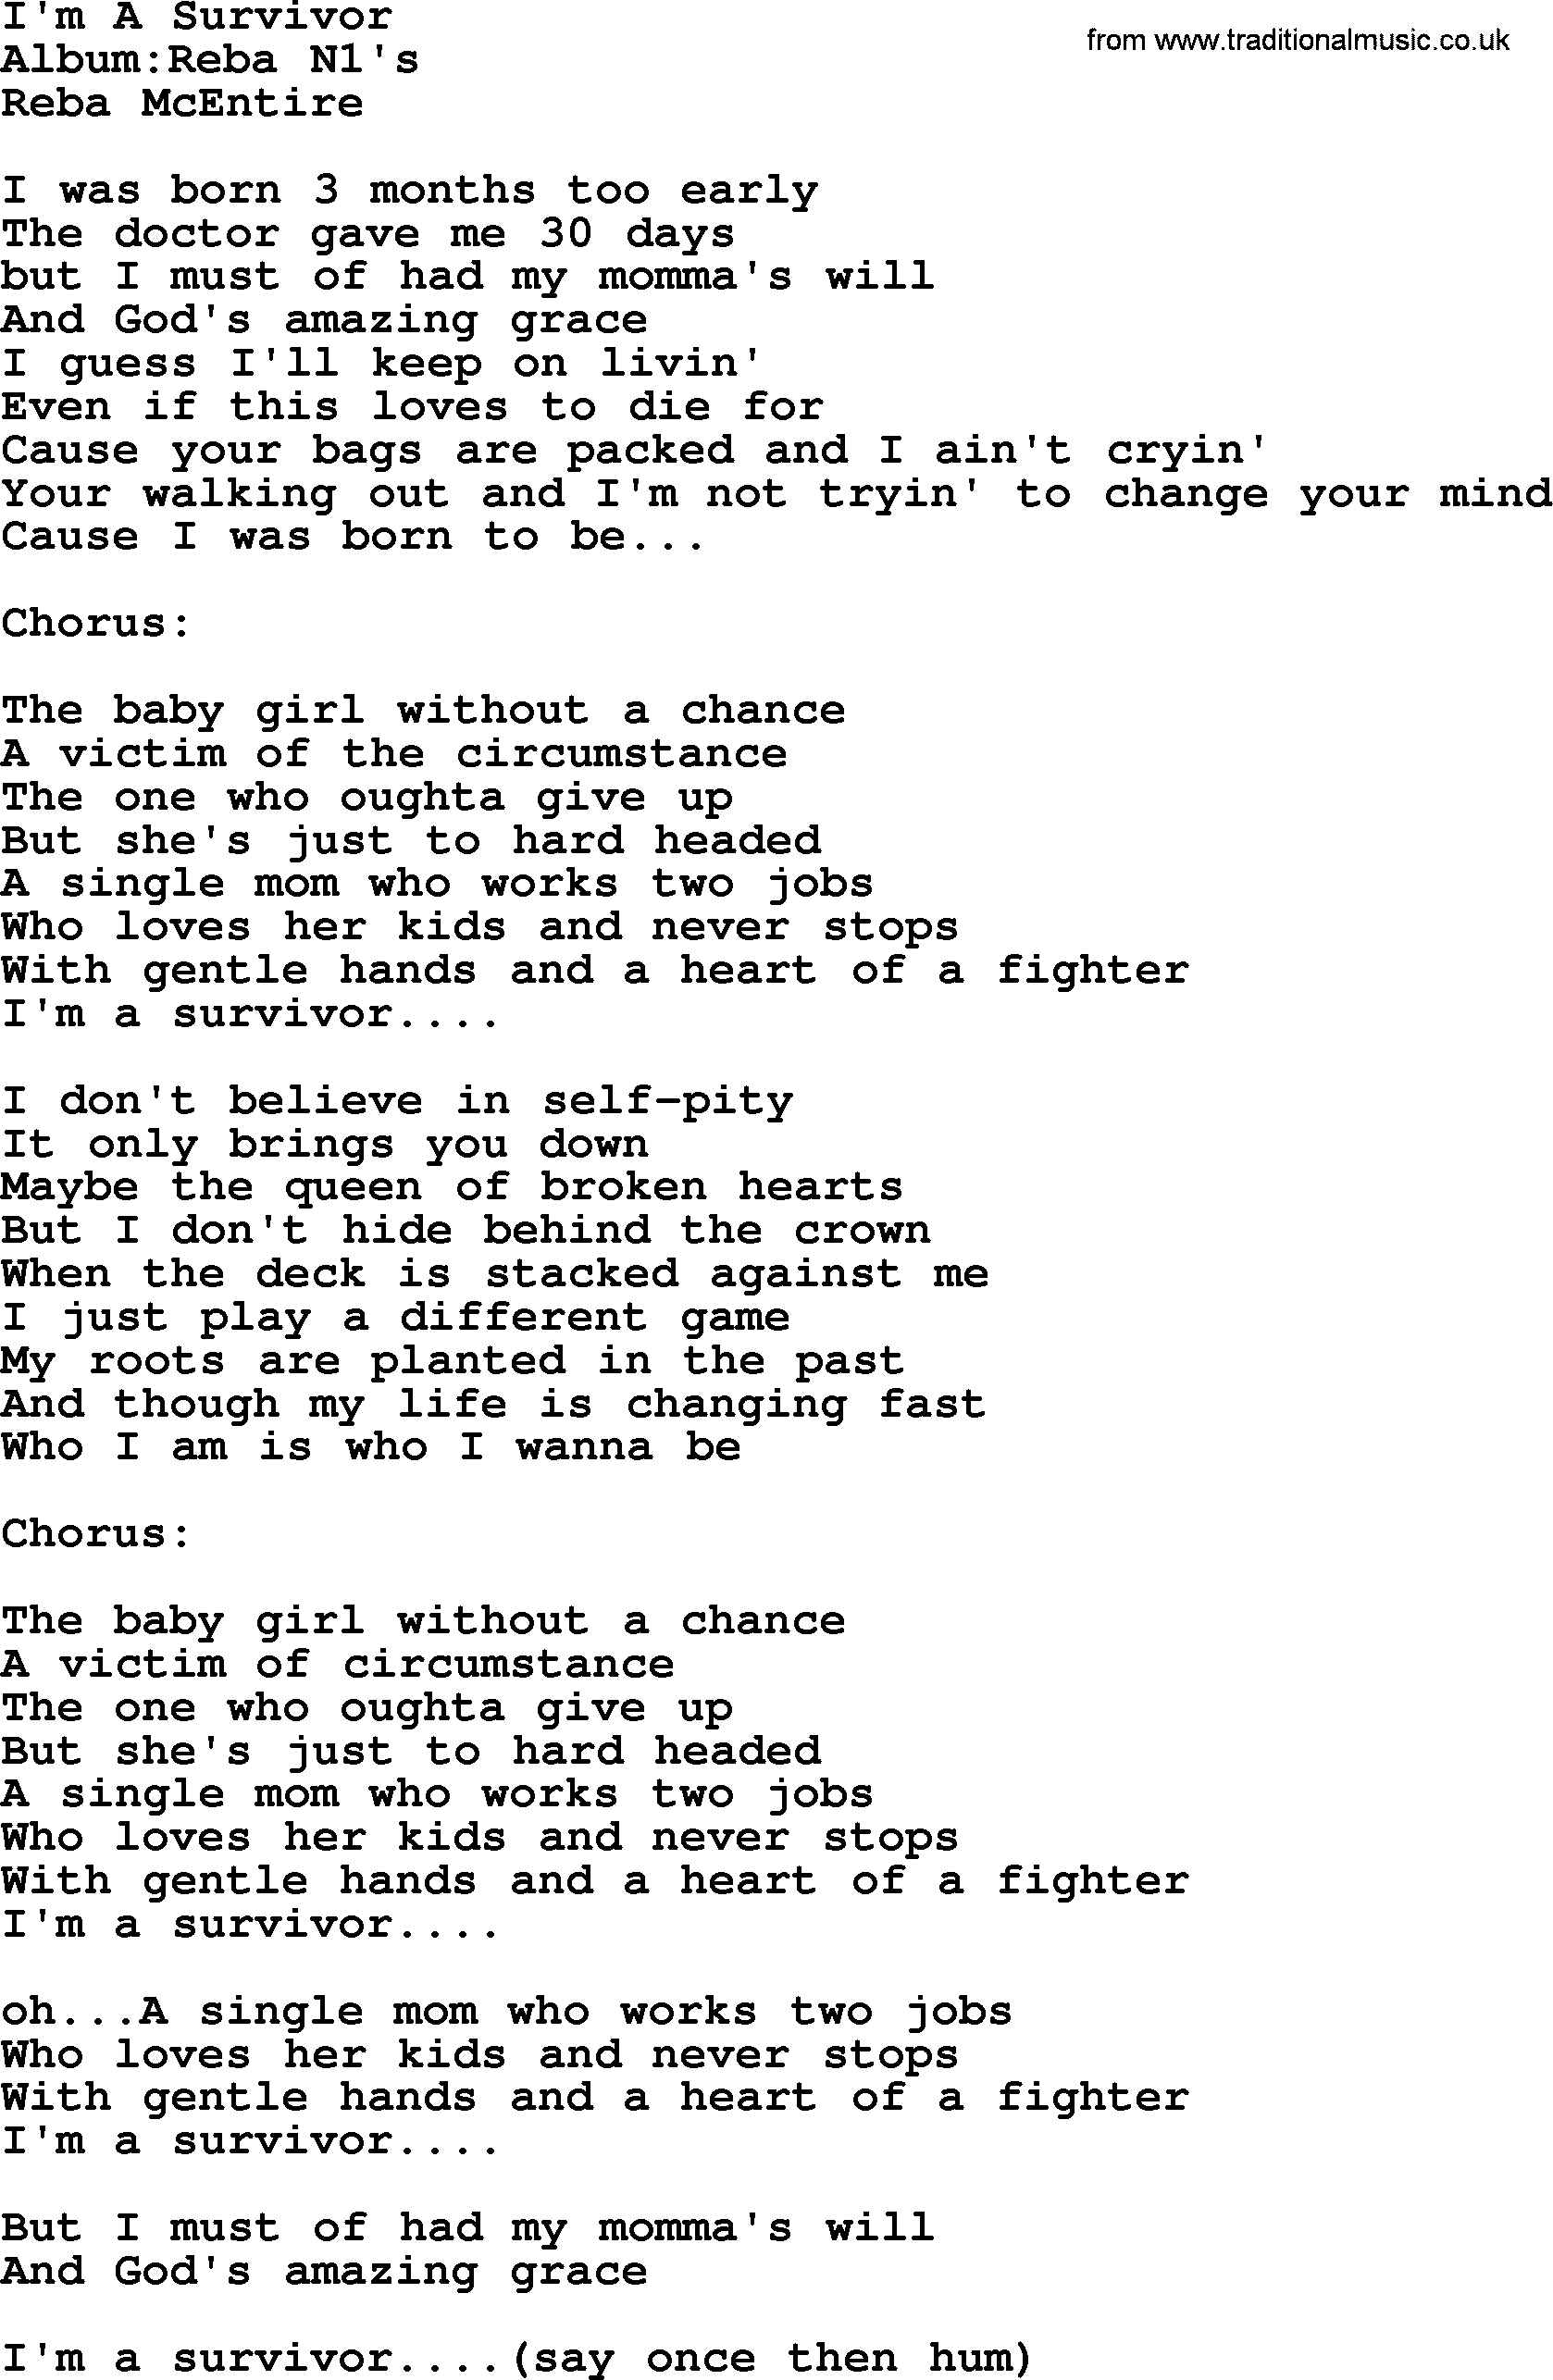 Reba McEntire song: I'm A Survivor lyrics